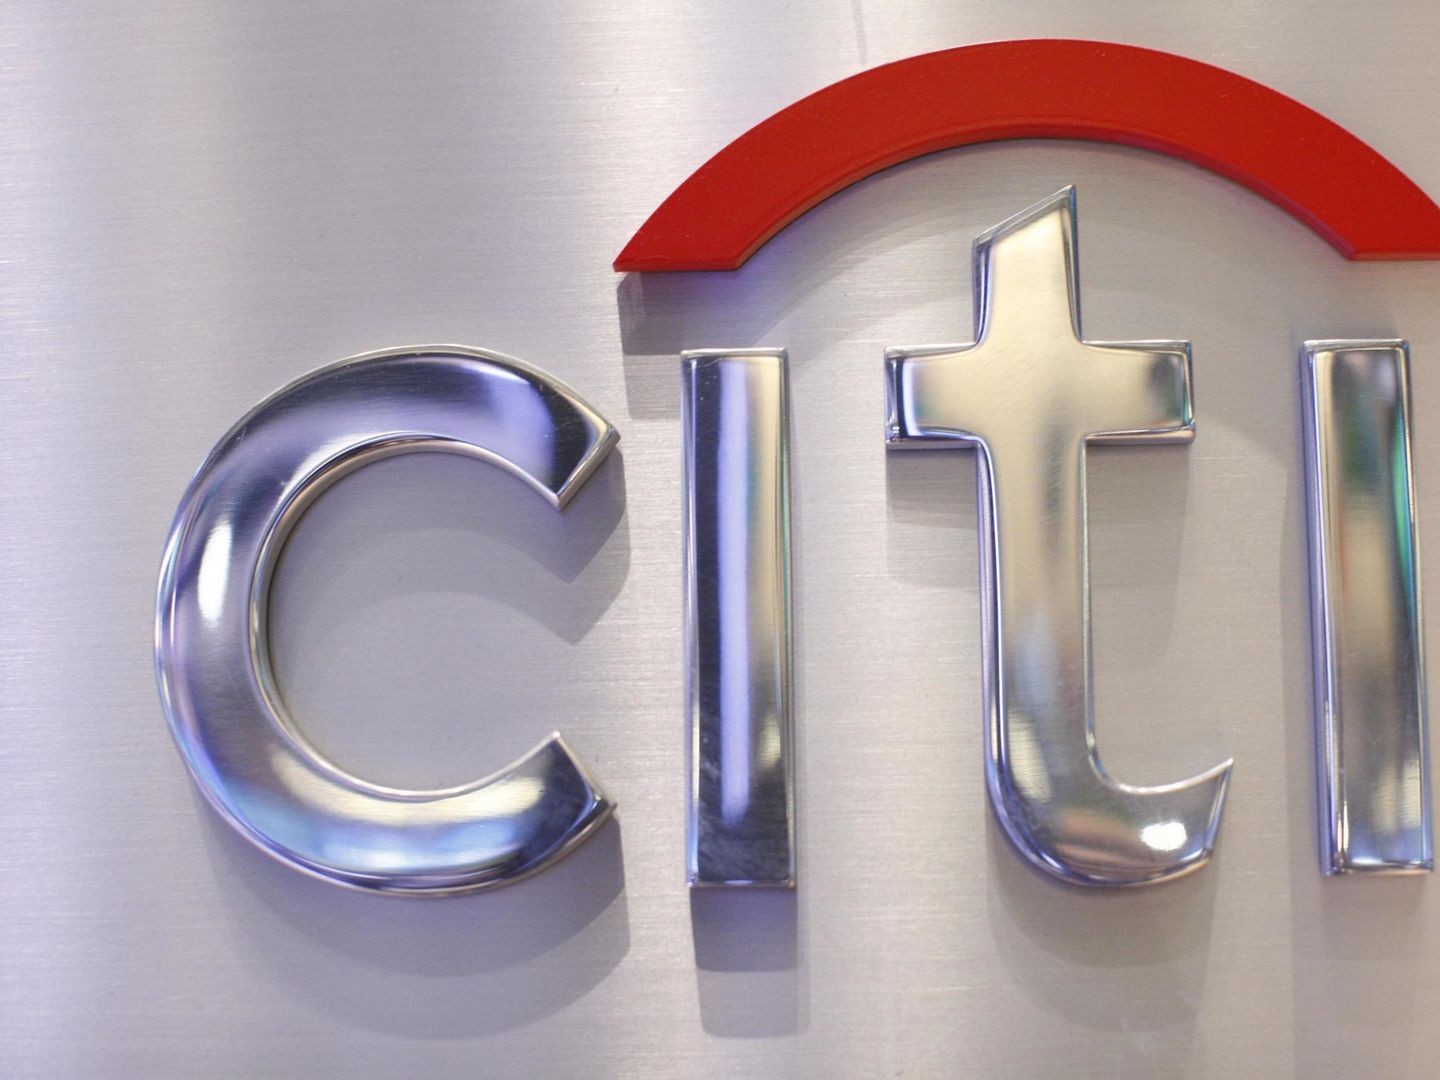 Logo de Citi. (REUTERS)